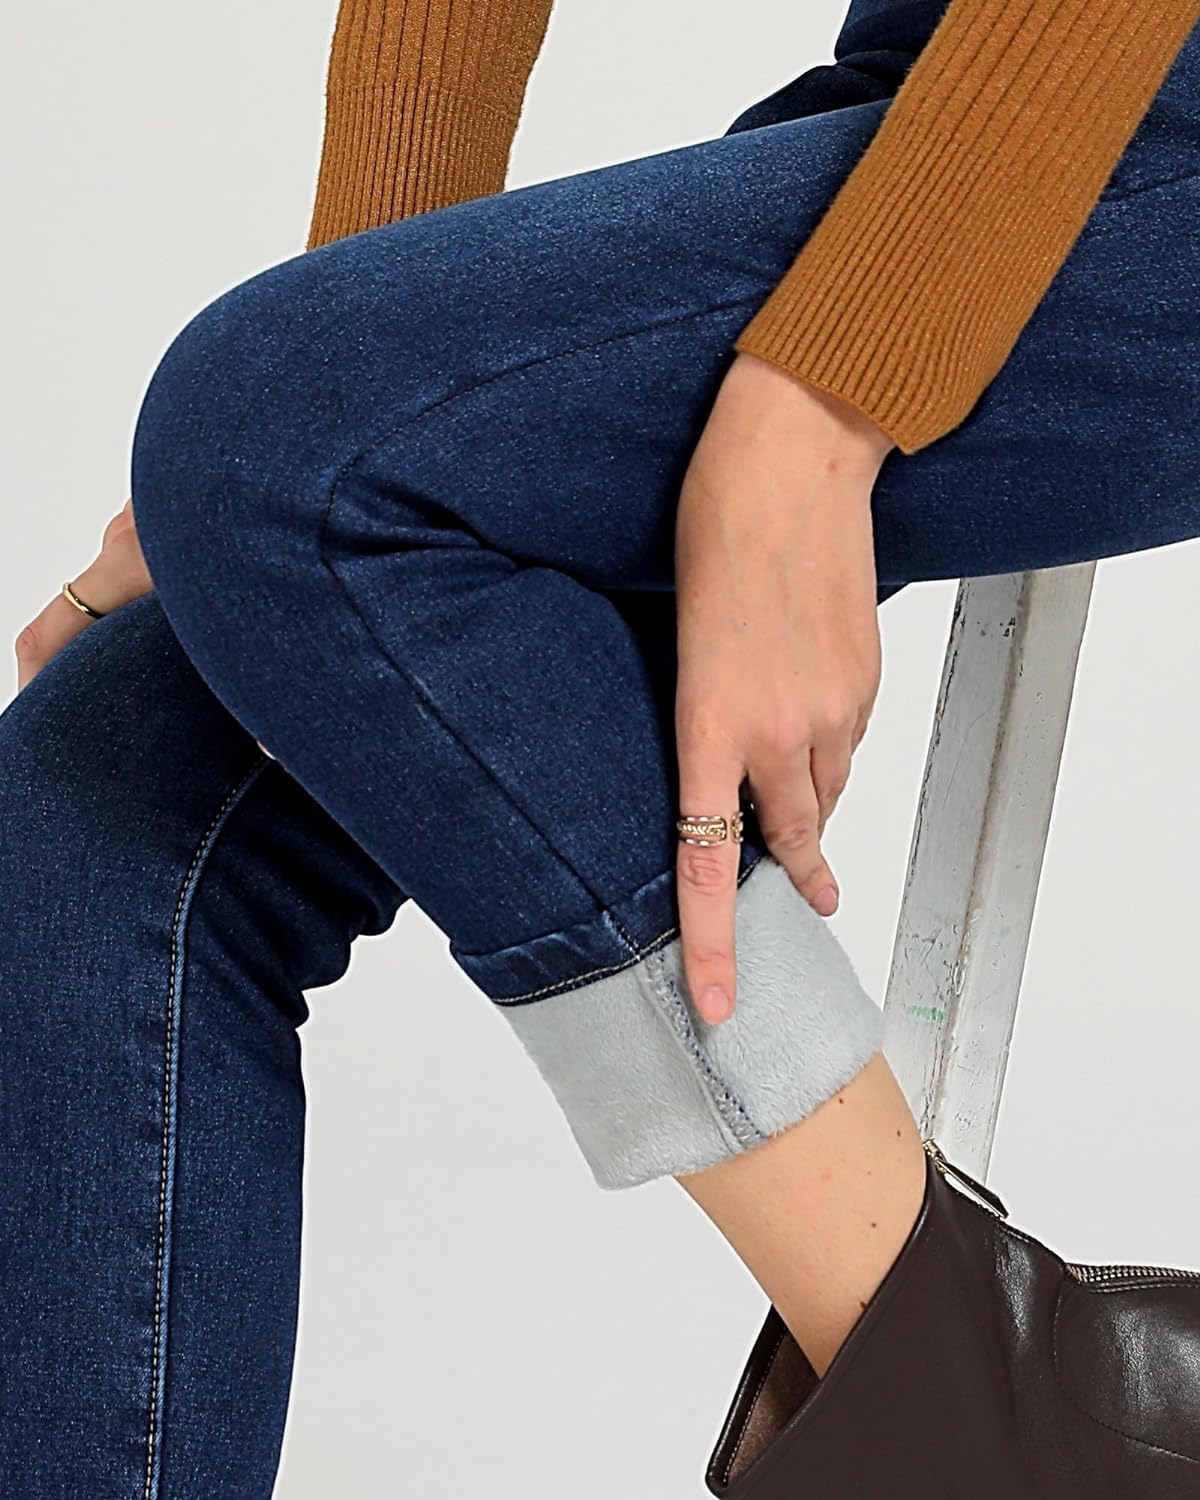 GRAPENT Jeans for Women High Waisted Pull On Fleece Lined Leggings